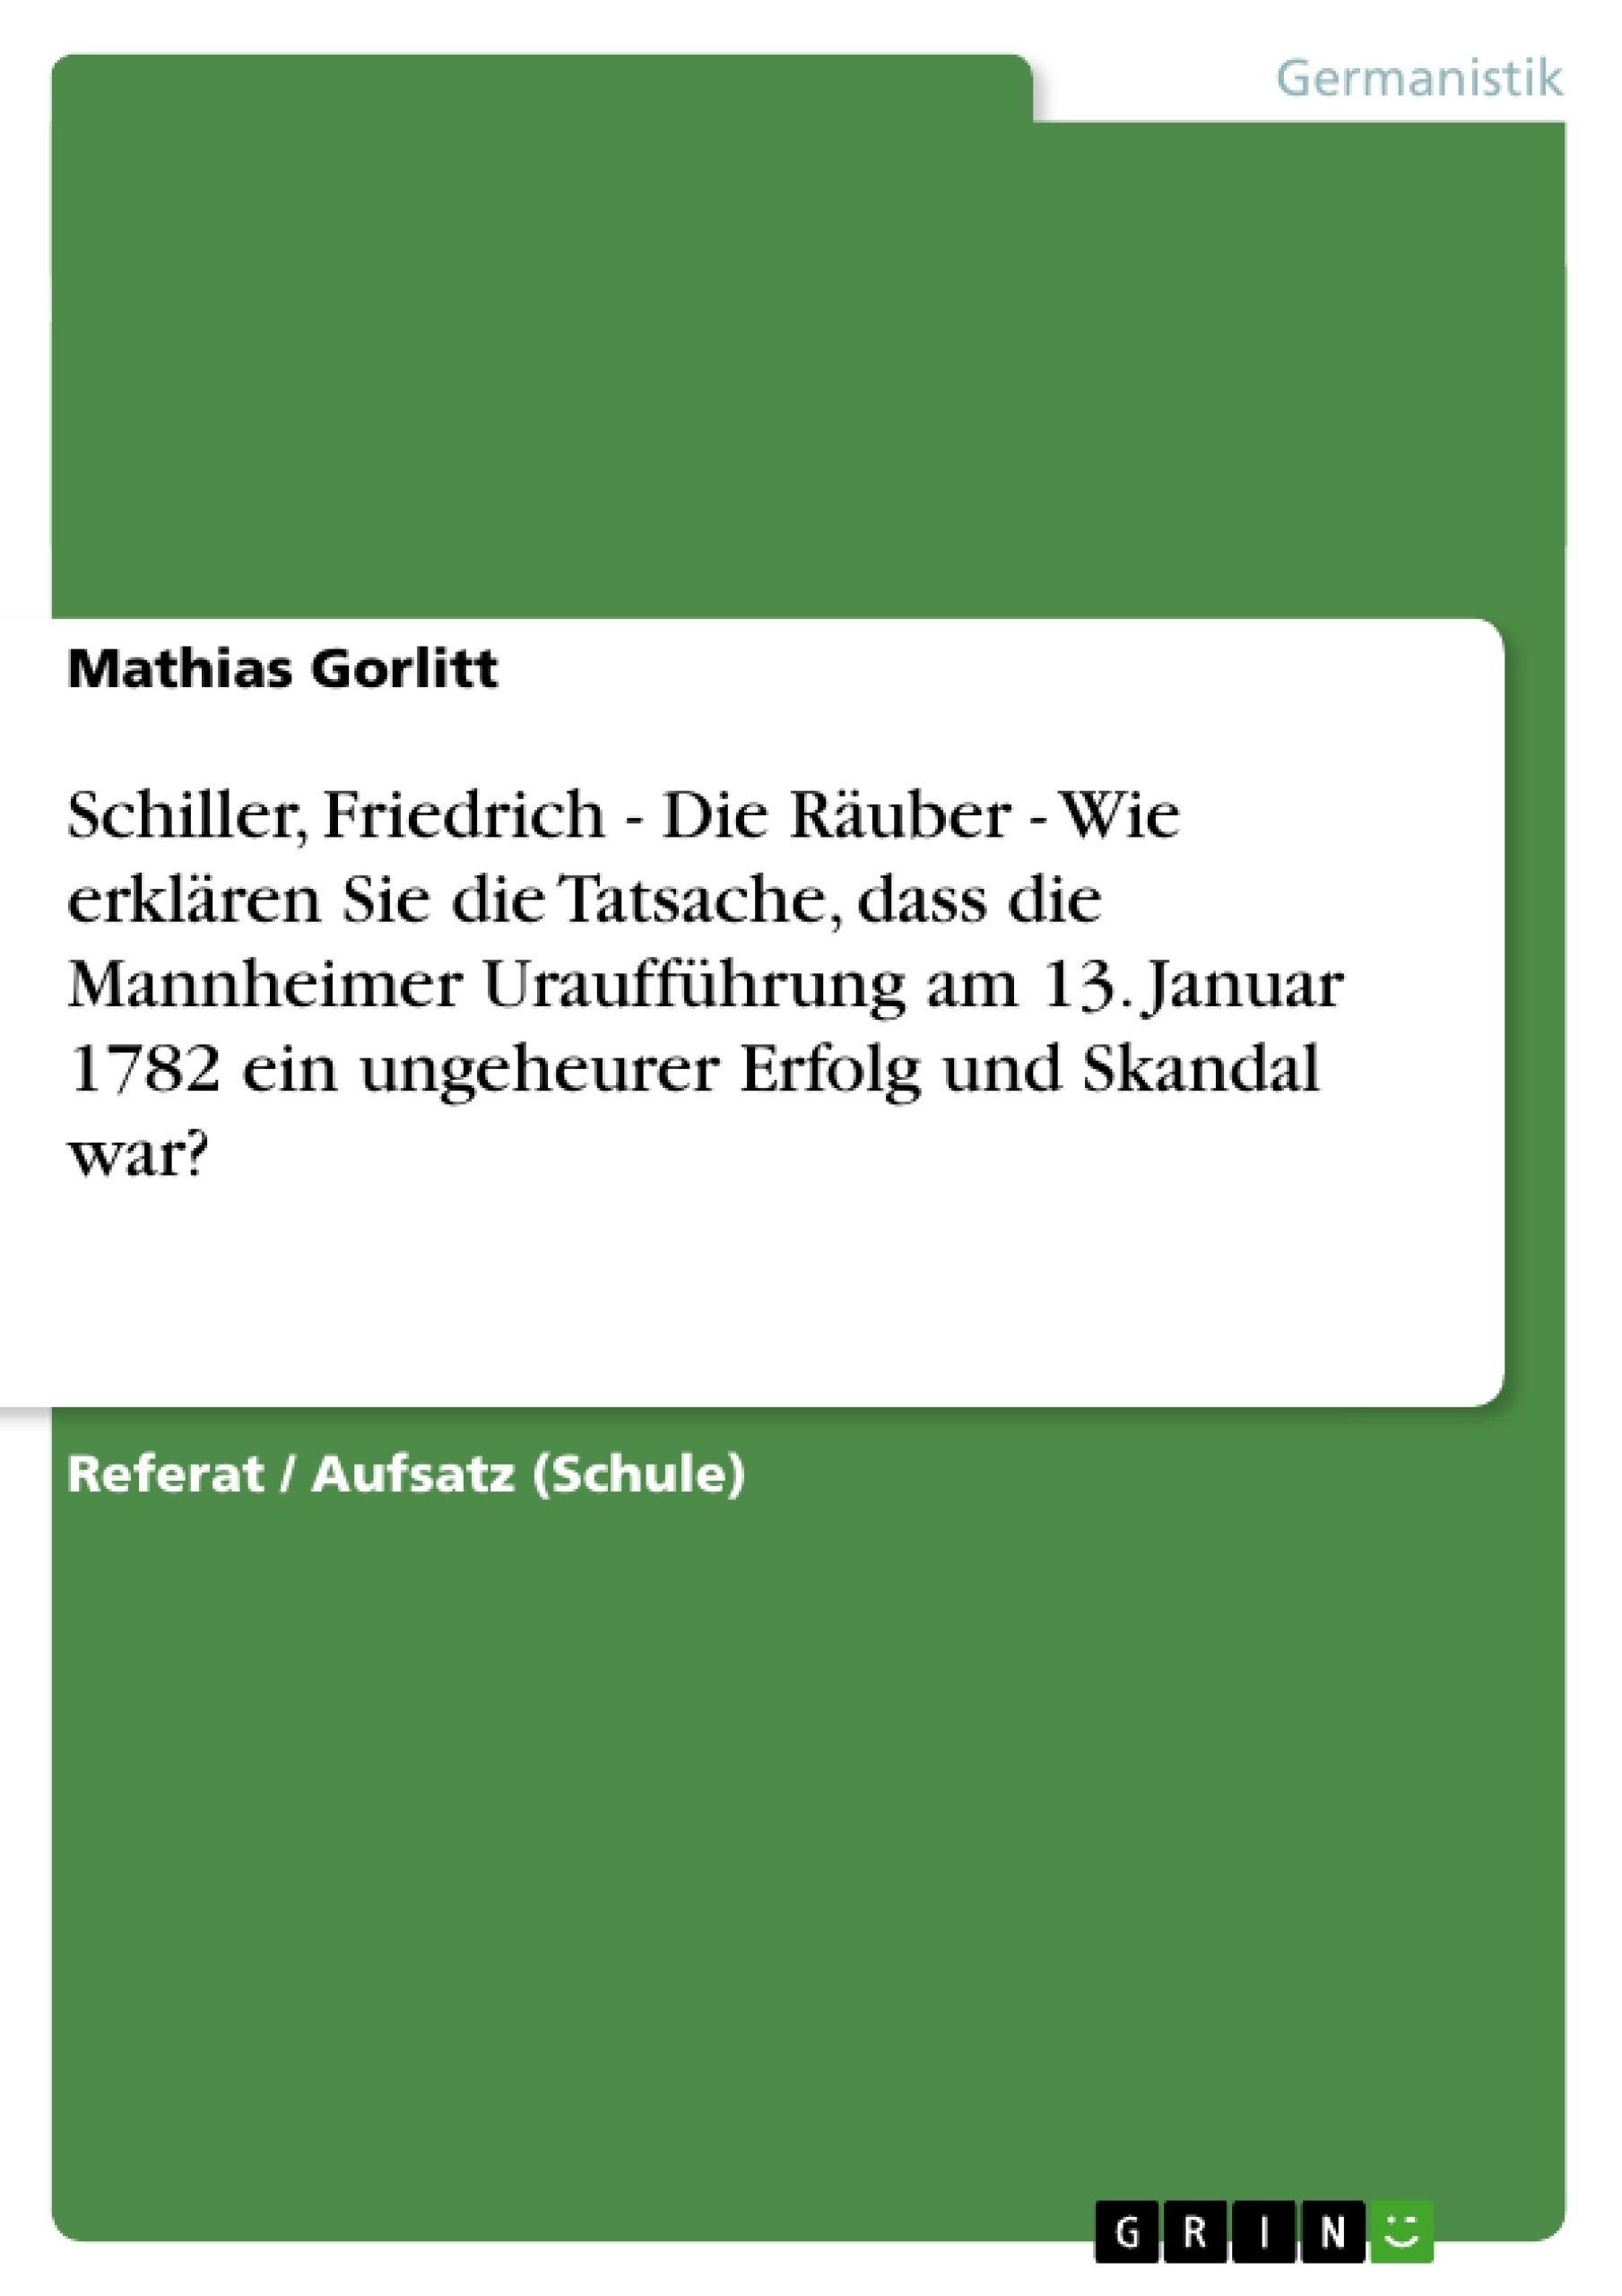 Título: Schiller, Friedrich - Die Räuber - Wie erklären Sie die Tatsache, dass die Mannheimer Uraufführung am 13. Januar 1782 ein ungeheurer Erfolg und Skandal war?